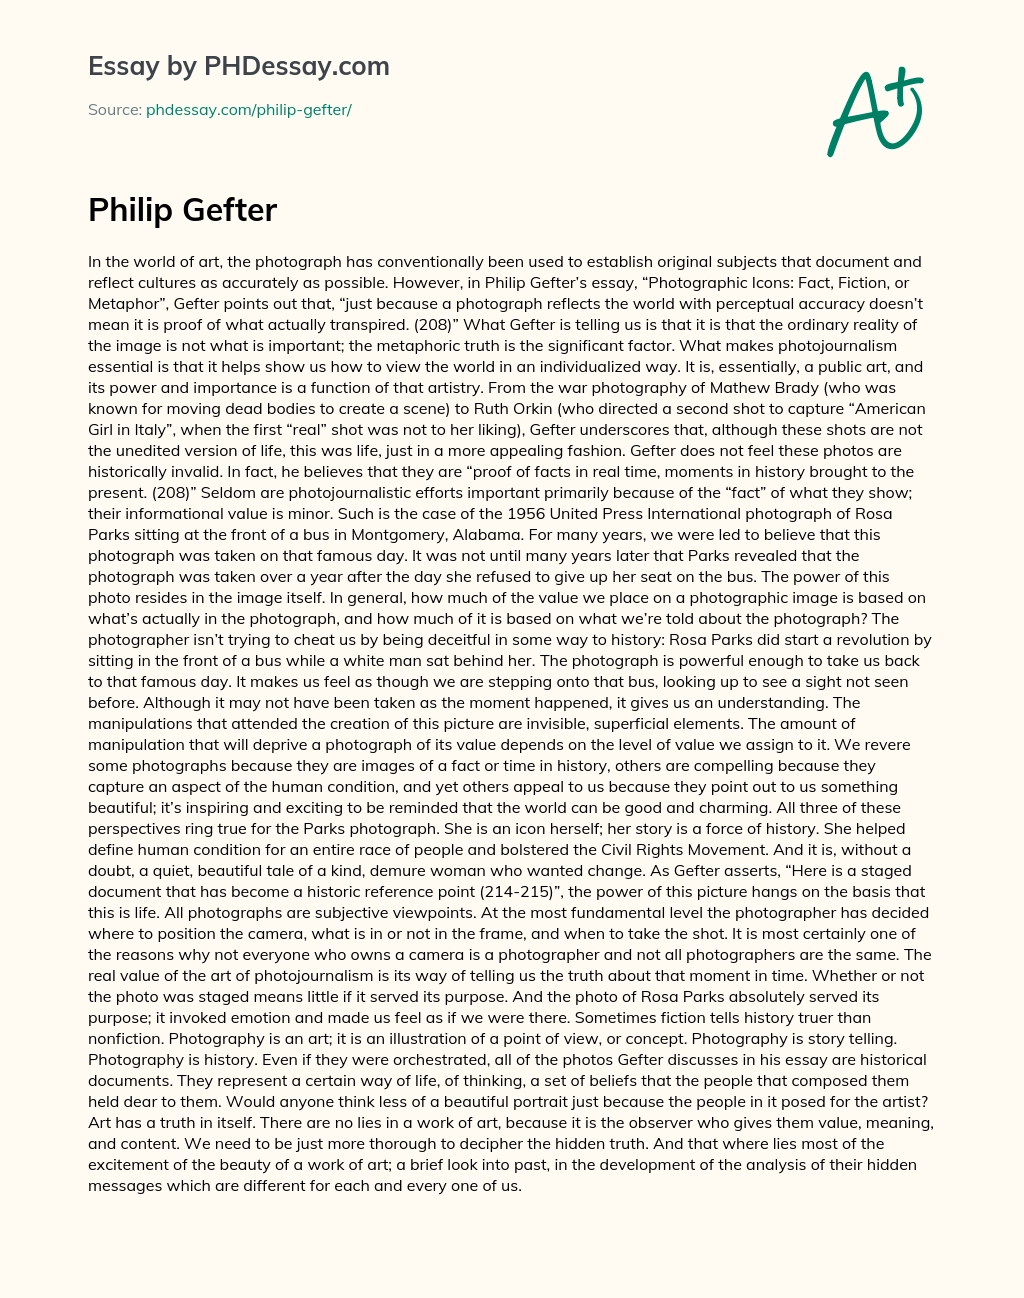 Philip Gefter essay